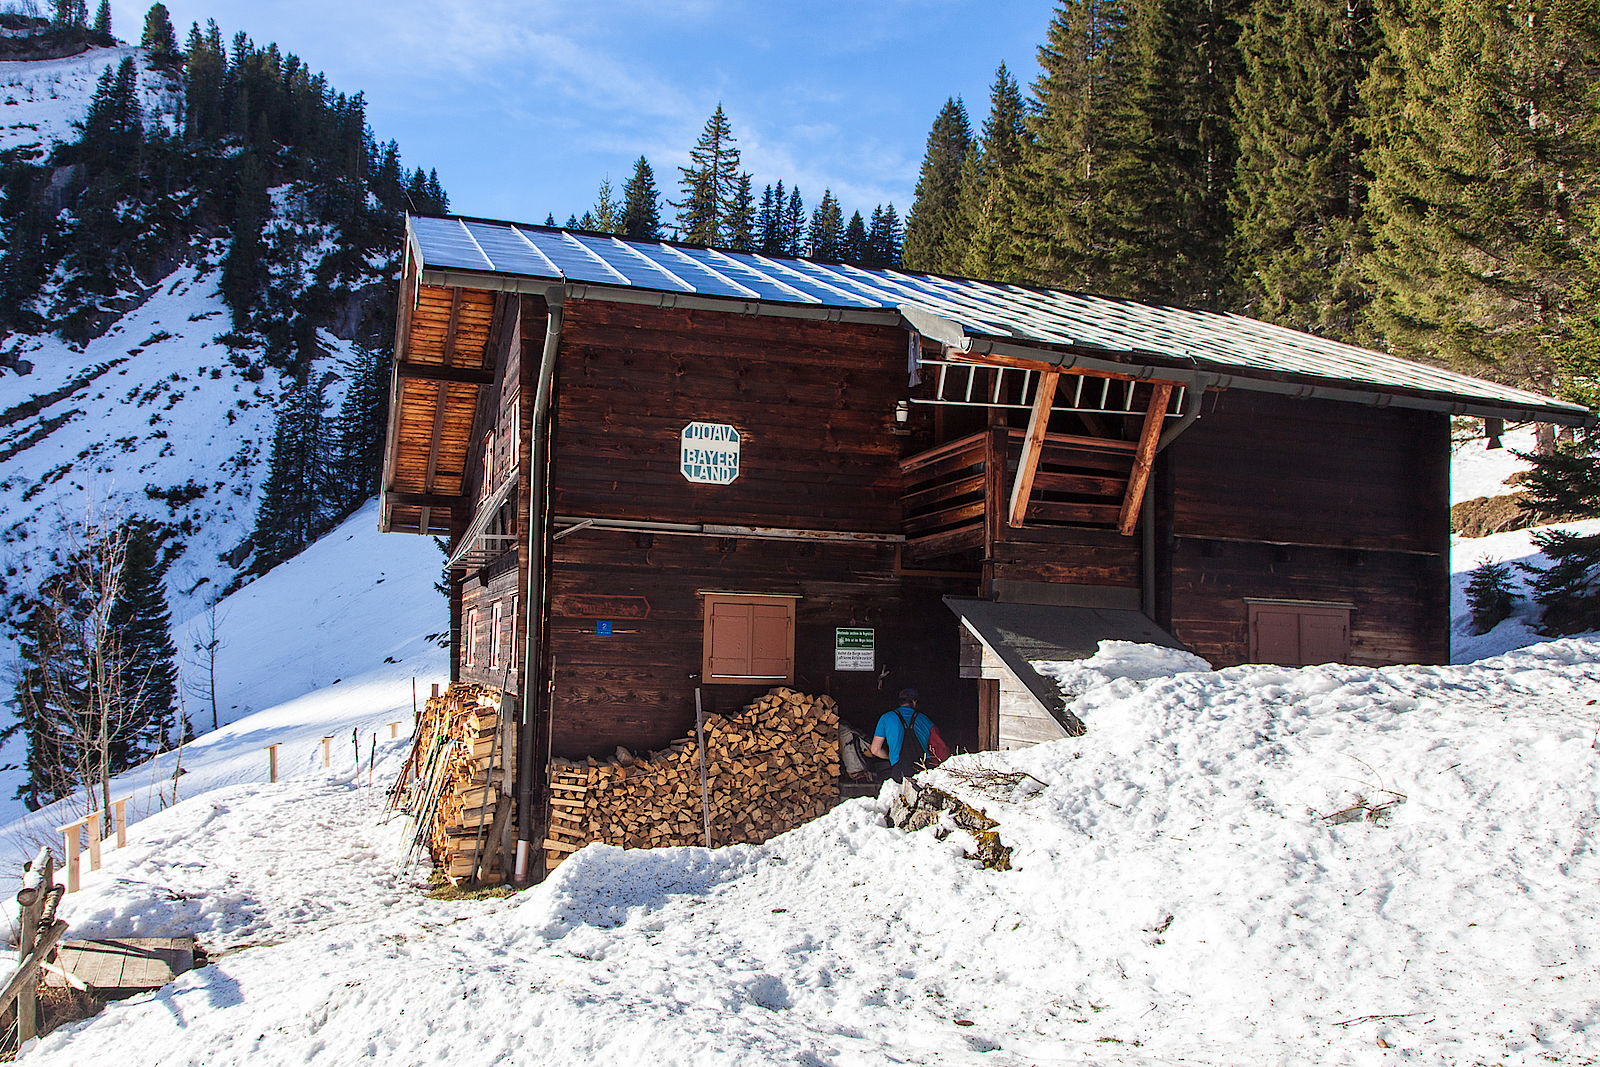 Die Rauhkopfhütte der Sektion Bayerland im Taubensteingebiet, in der an diesem Wochenende ein Lawinensuchtraining der Sektion stattfindet.